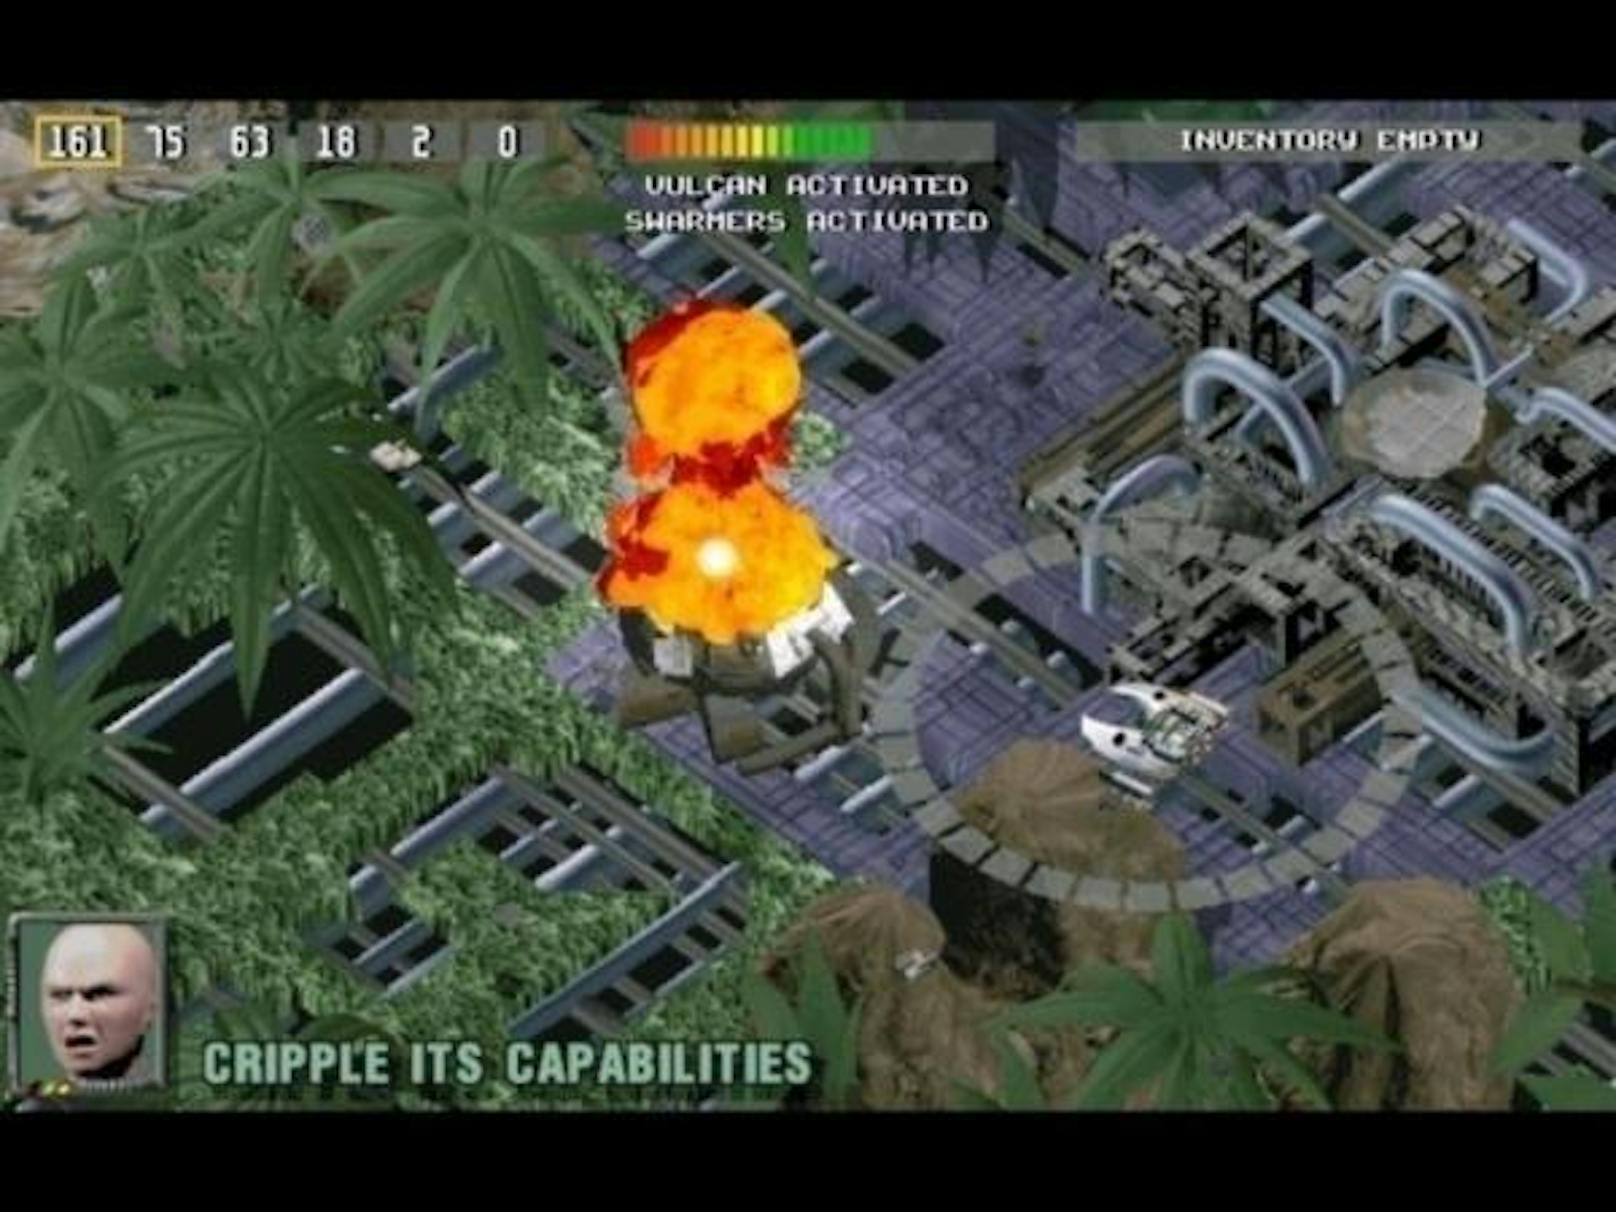 <b>1996:</b> Epic MegaGames veröffentlichte den Shooter "Fire Fight" zusammen mit dem Studio Chaos Works aus Polen. Vertrieben wurde das Spiel von Electronic Arts. 1997 hatte die Firma bereits 50 Mitarbeiter. Innerhalb von sieben Jahren bewegte sich die Firma stärker zum Einzelhandel, anstatt den direkten Vertrieb zu Kunden anzustreben.